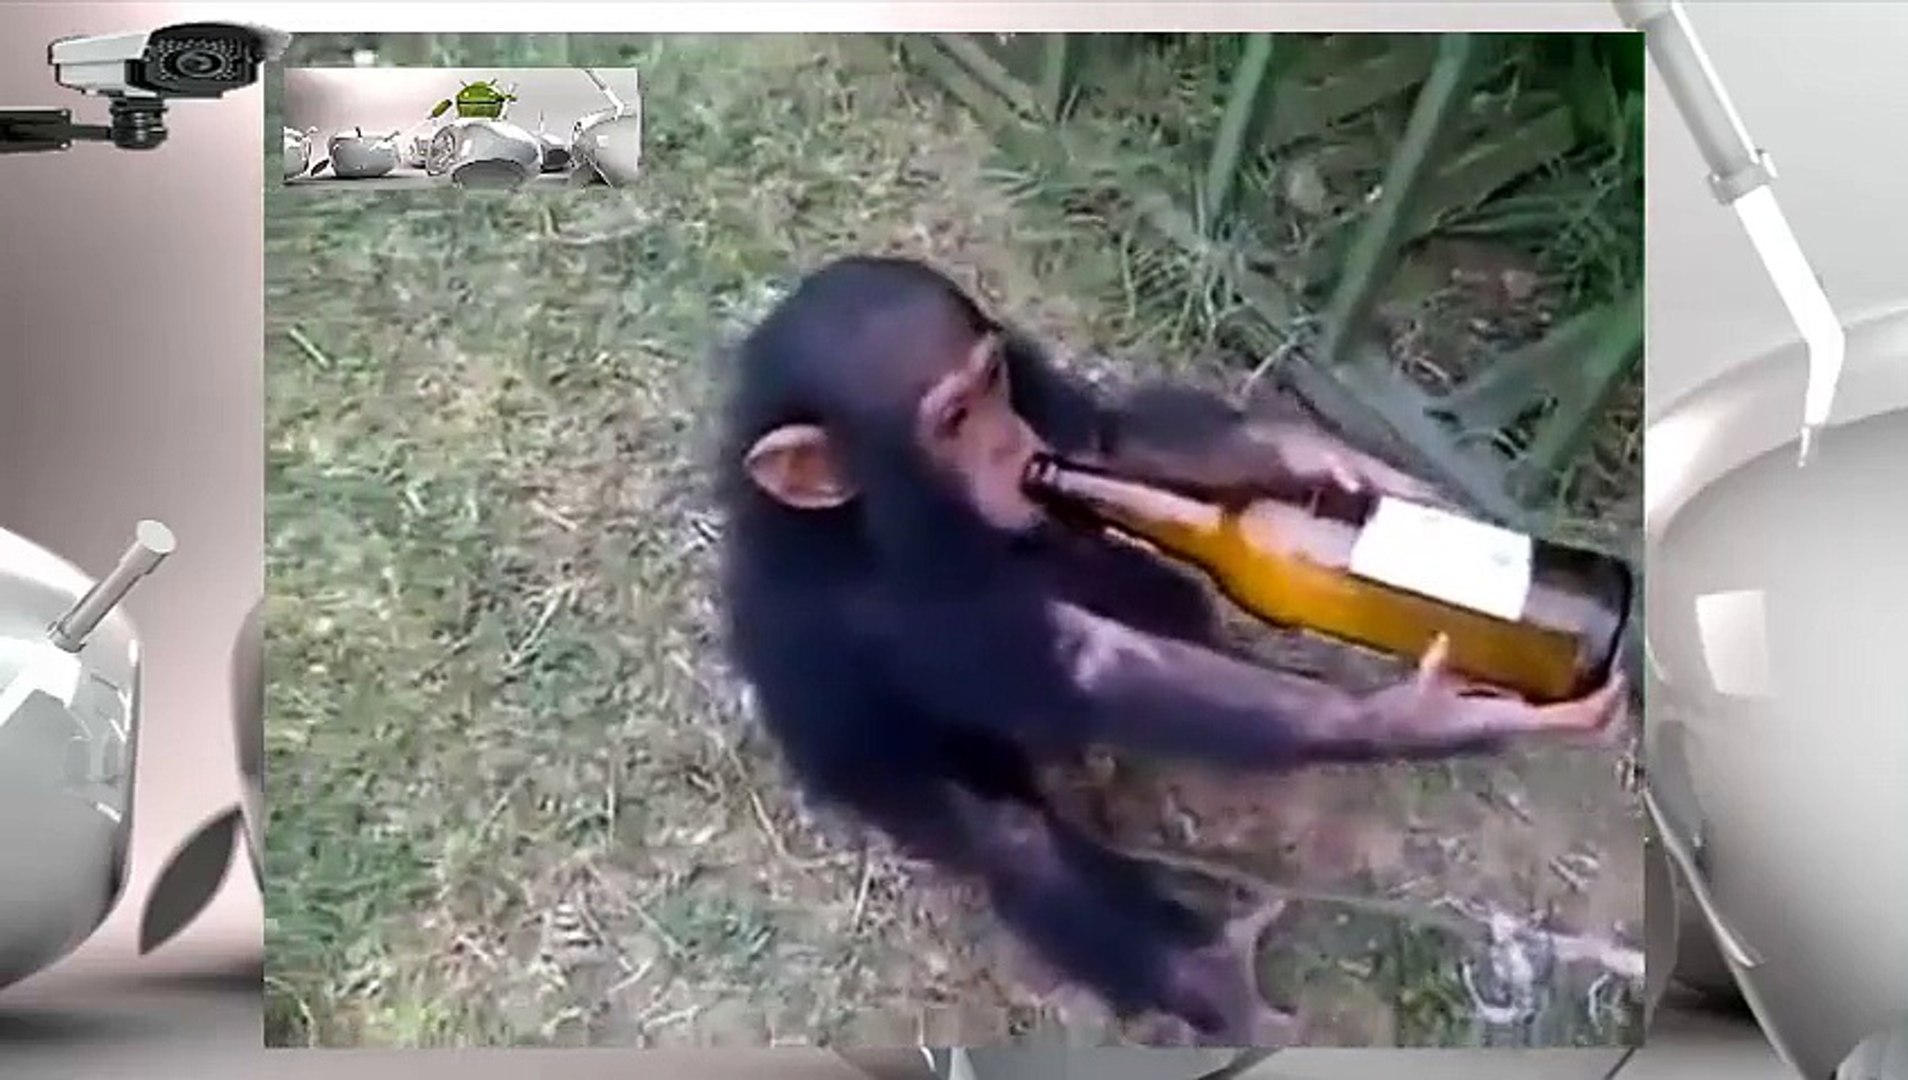 Ngakak,Simpanse Mabuk dan Nangis menjerit / Chimpanzees drunk and screaming Crying